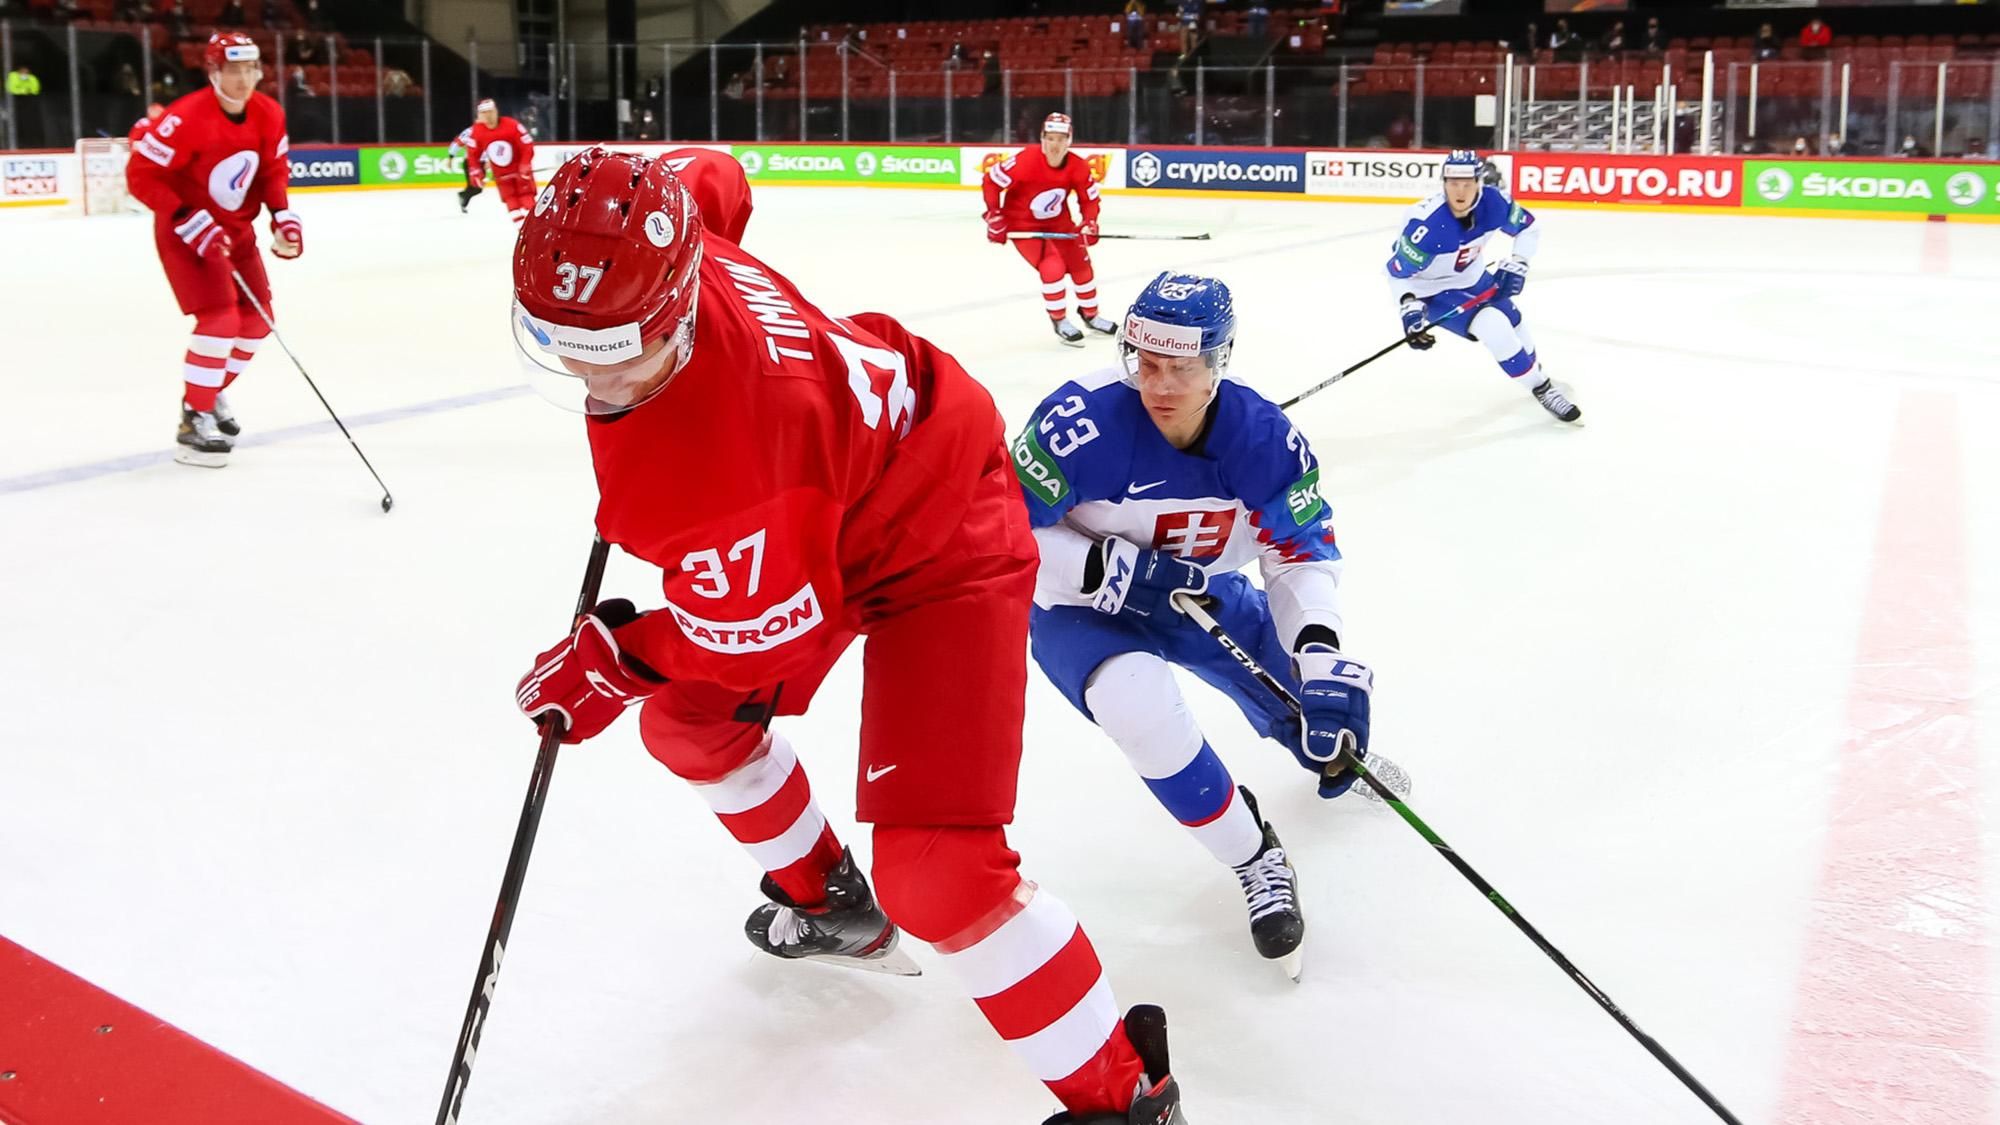 Россия проиграла на чемпионате мира по хоккею, пропустив гол в пустые ворота: видео